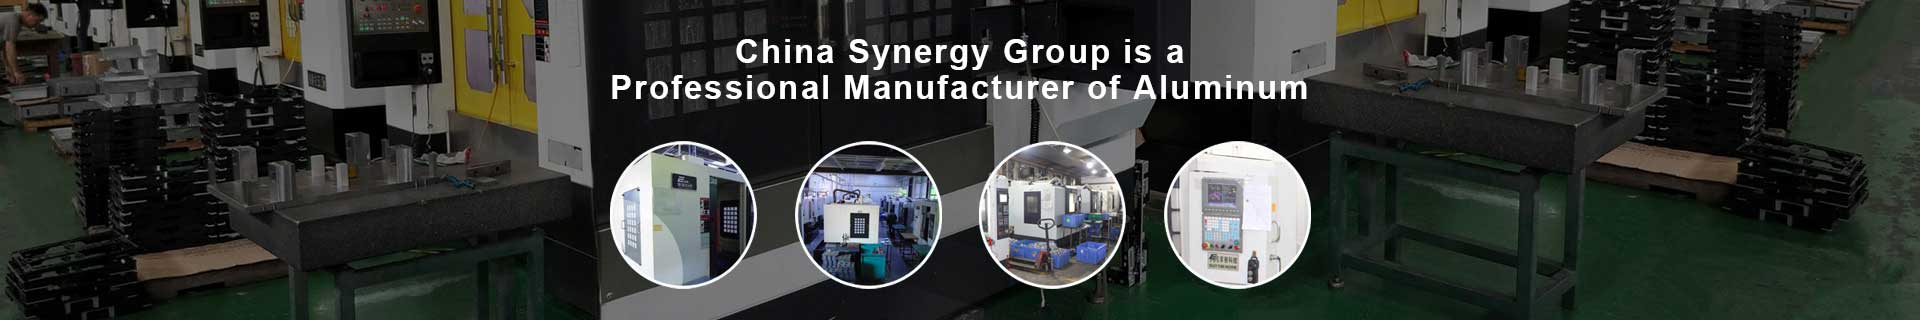 China Synergy Group